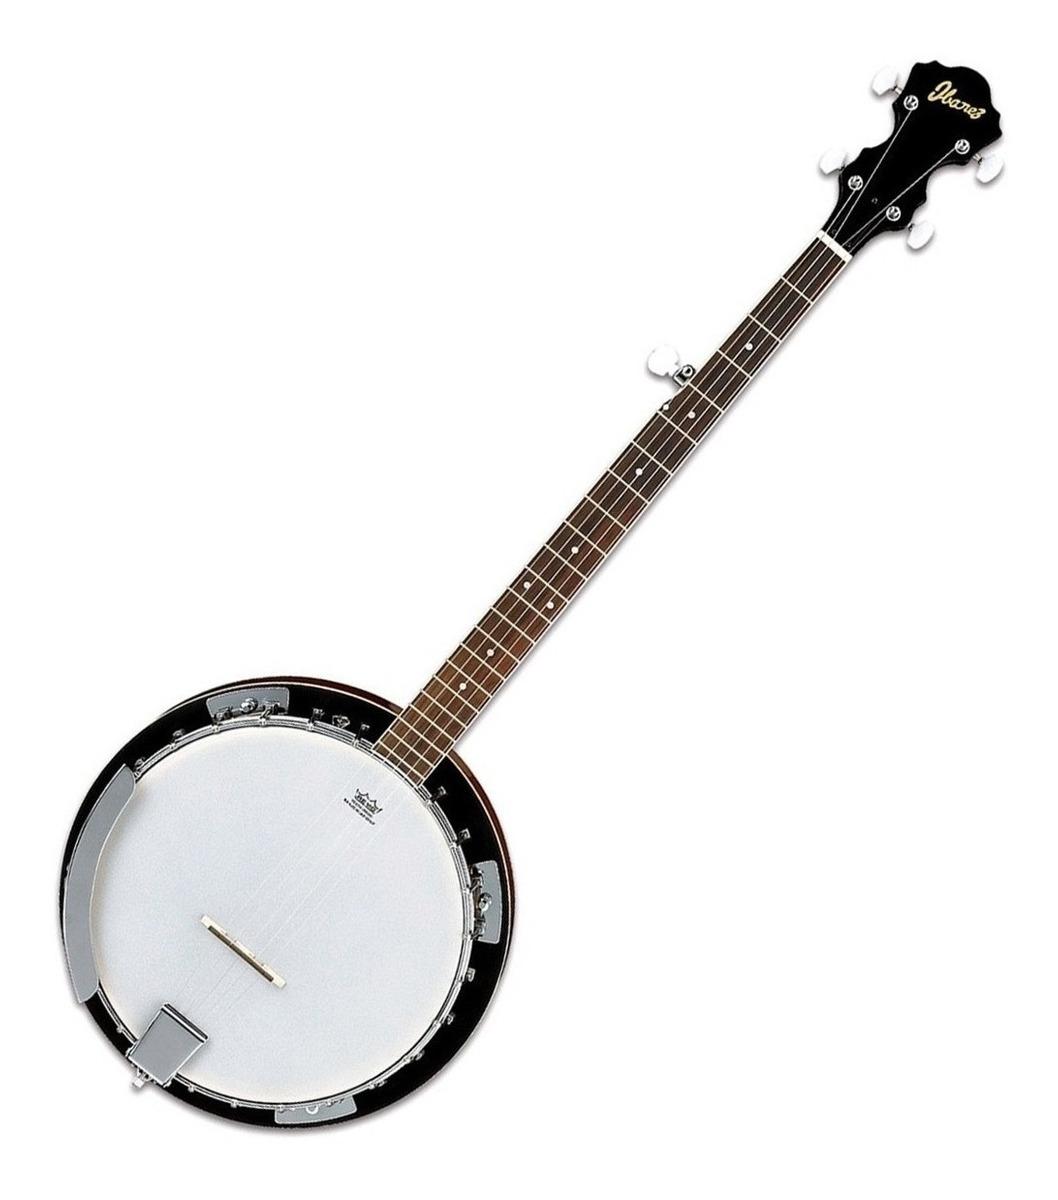 Ibañez - Banjo de 5 Cuerdas, Color: Caoba Mod.B50_193